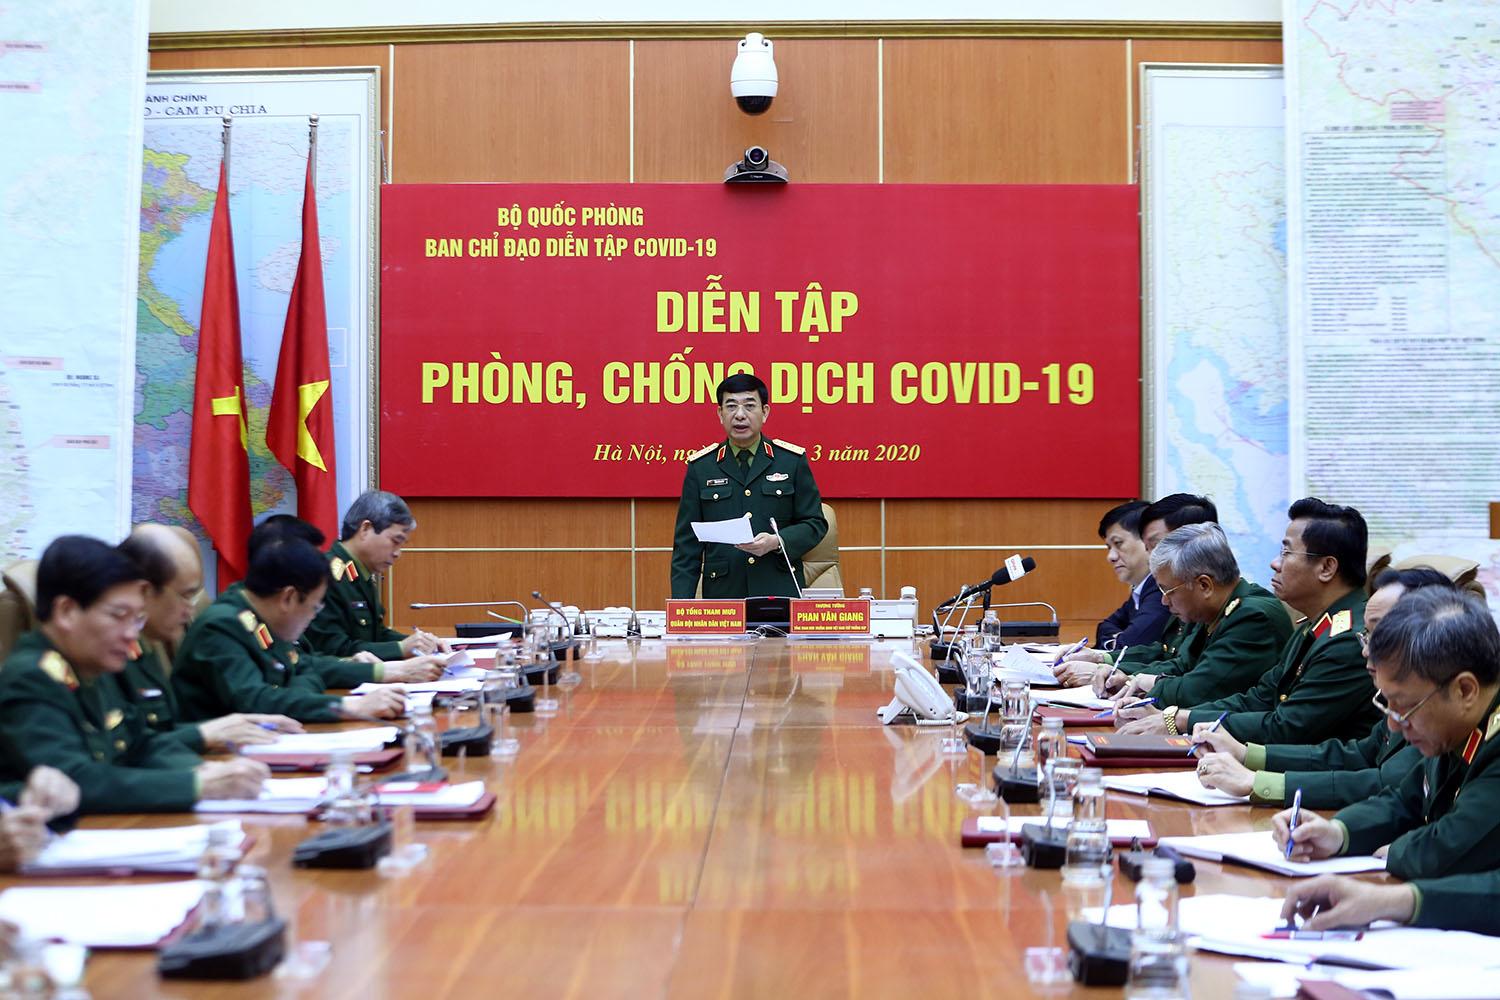 Thượng tướng Phan Văn Giang, Tổng Tham mưu trưởng, Thứ trưởng Bộ Quốc phòng nhấn mạnh đây là cuộc diễn tập phòng chống dịch bệnh lớn nhất từ trước đến nay của quân đội, có ý nghĩa quan trọng và cấp bách trong giai đoạn hiện nay. Ảnh: VGP